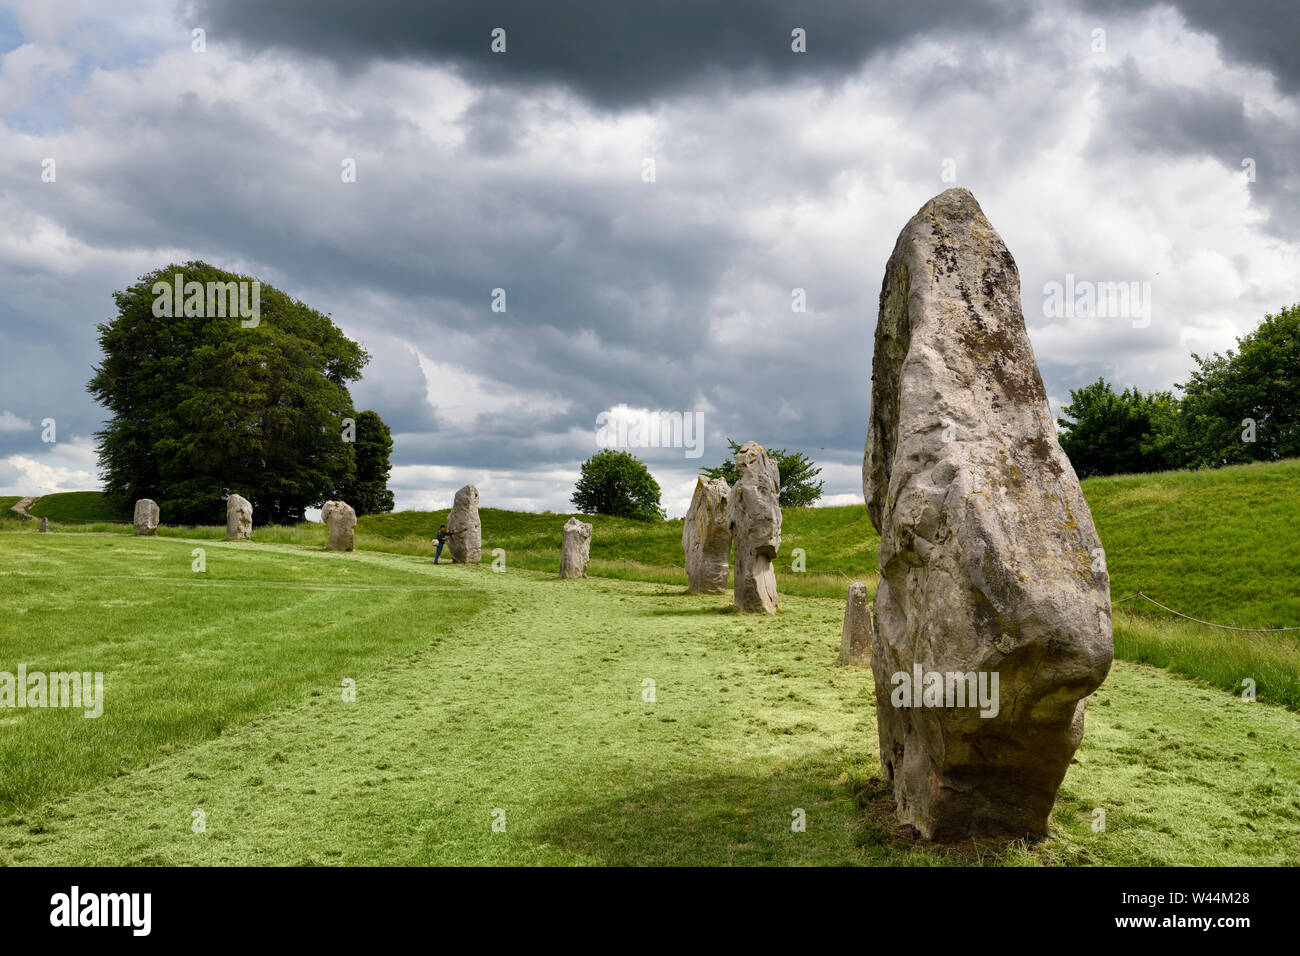 Visiteur touchant un monolithe permanent néolithique à Avebury Henge Angleterre secteur sud-ouest de bord du plus grand cercle de pierres mégalithiques dans le monde Banque D'Images